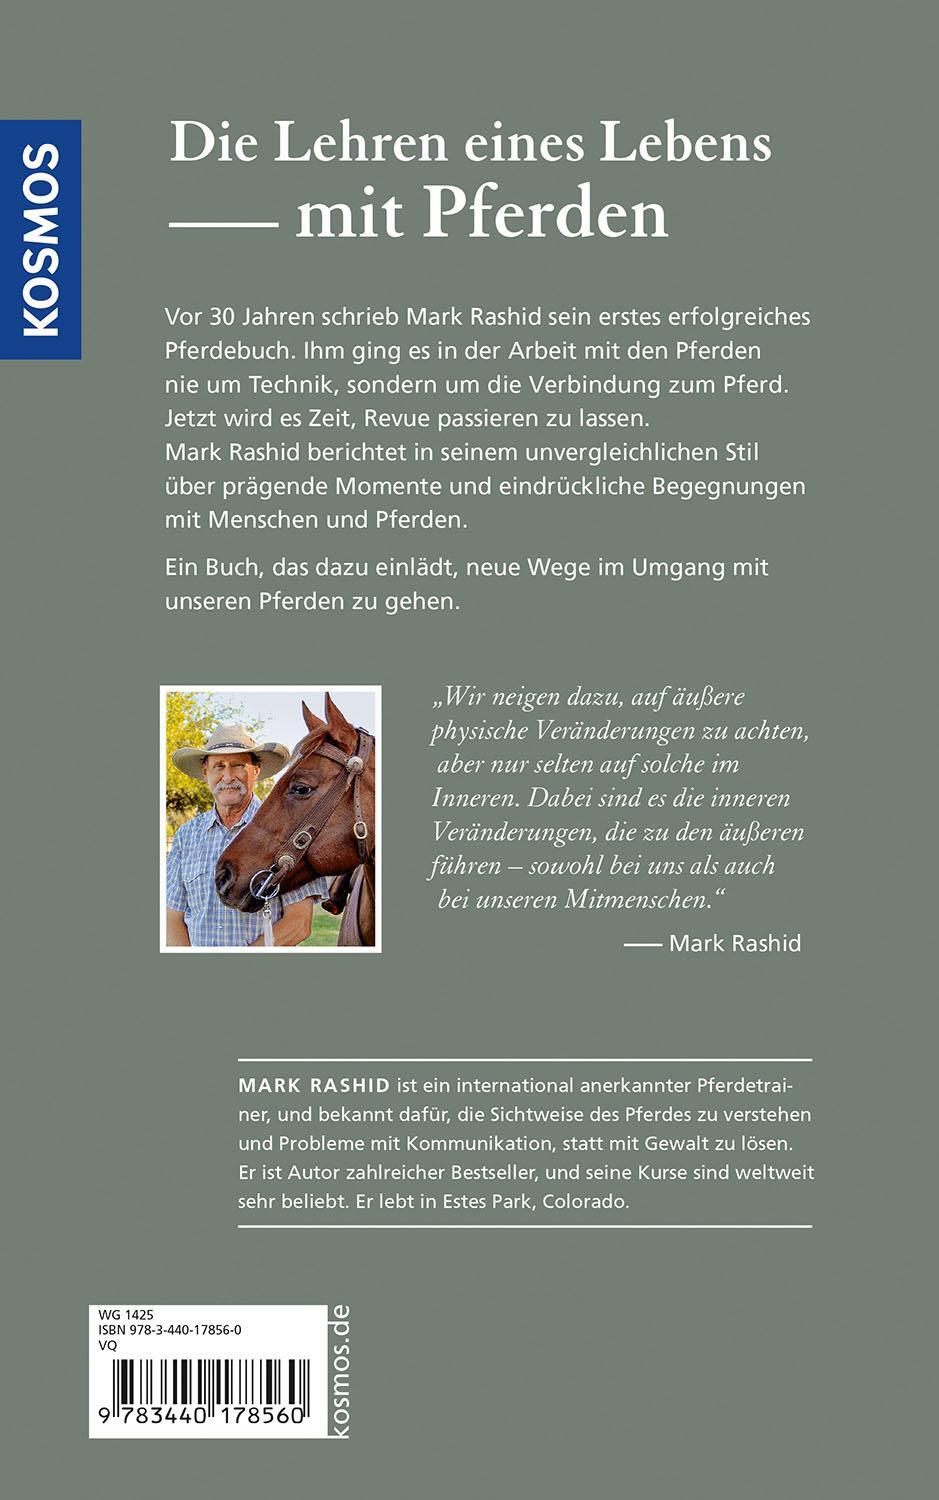 Bild: 9783440178560 | Aus Liebe zu den Pferden | Mark Rashid | Buch | 264 S. | Deutsch